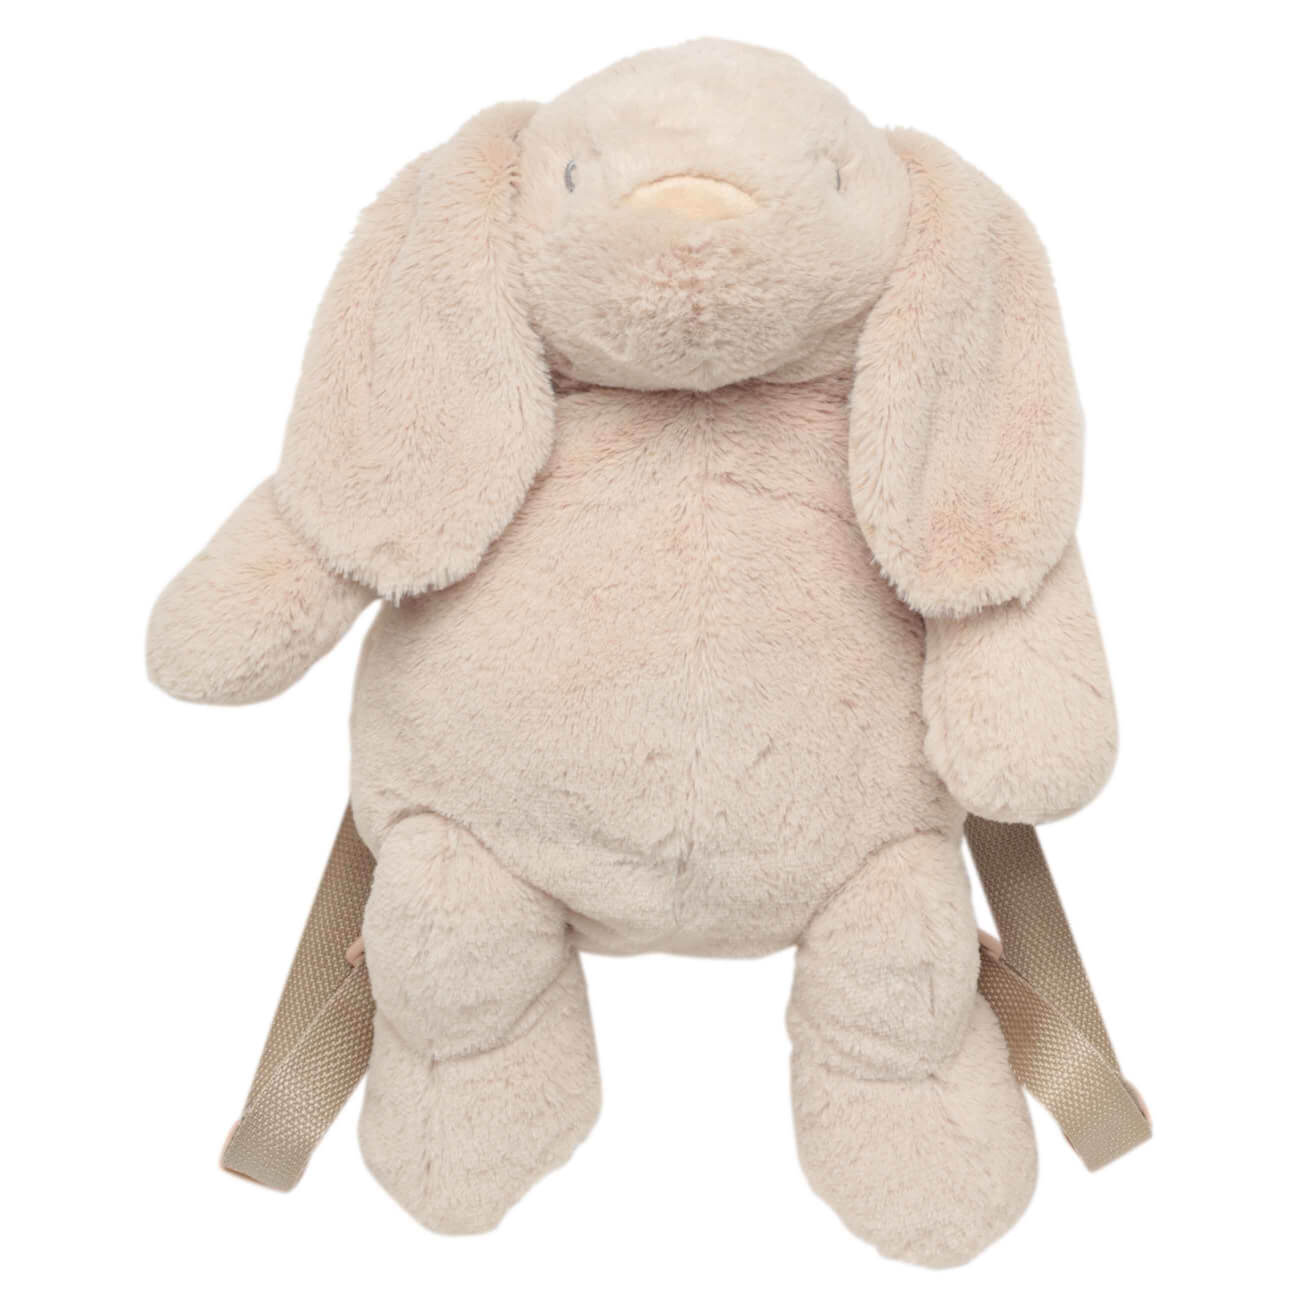 Рюкзак, 40х26 см, детский, плюш, бежевый, Зайка, Rabbit игрушка 21 см мягкая полиэстер розовая зайка с бантиком rabbit